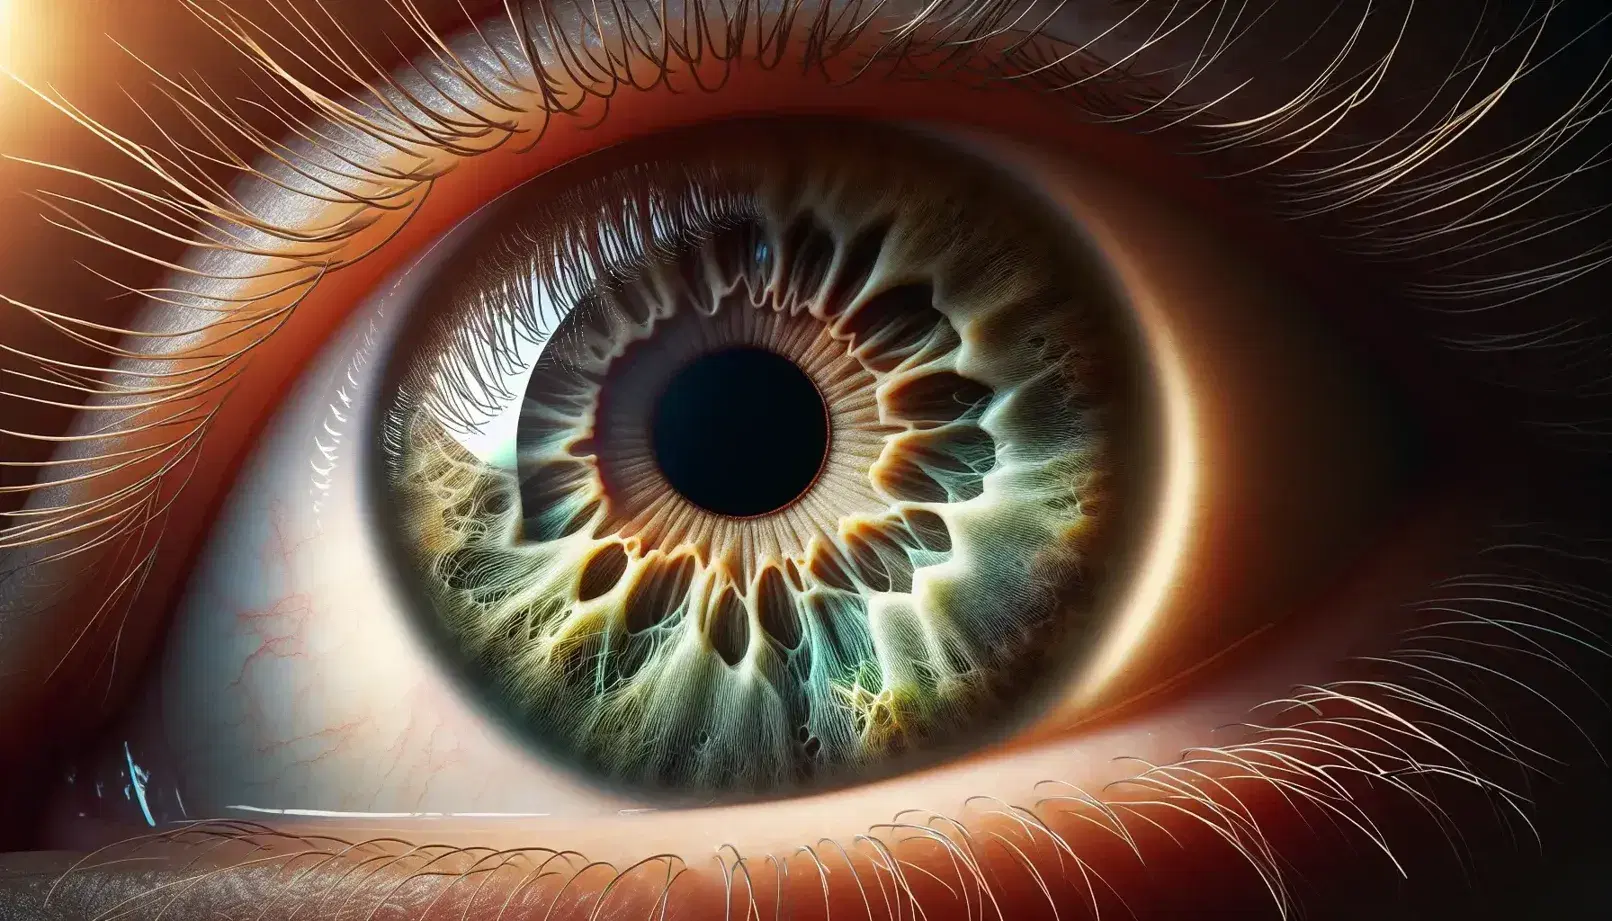 Primer plano de un ojo humano con pupila negra, iris verde-marrón y reflejo de luz tipo arcoíris, rodeado de pestañas y con pequeñas venas en la esclerótica.